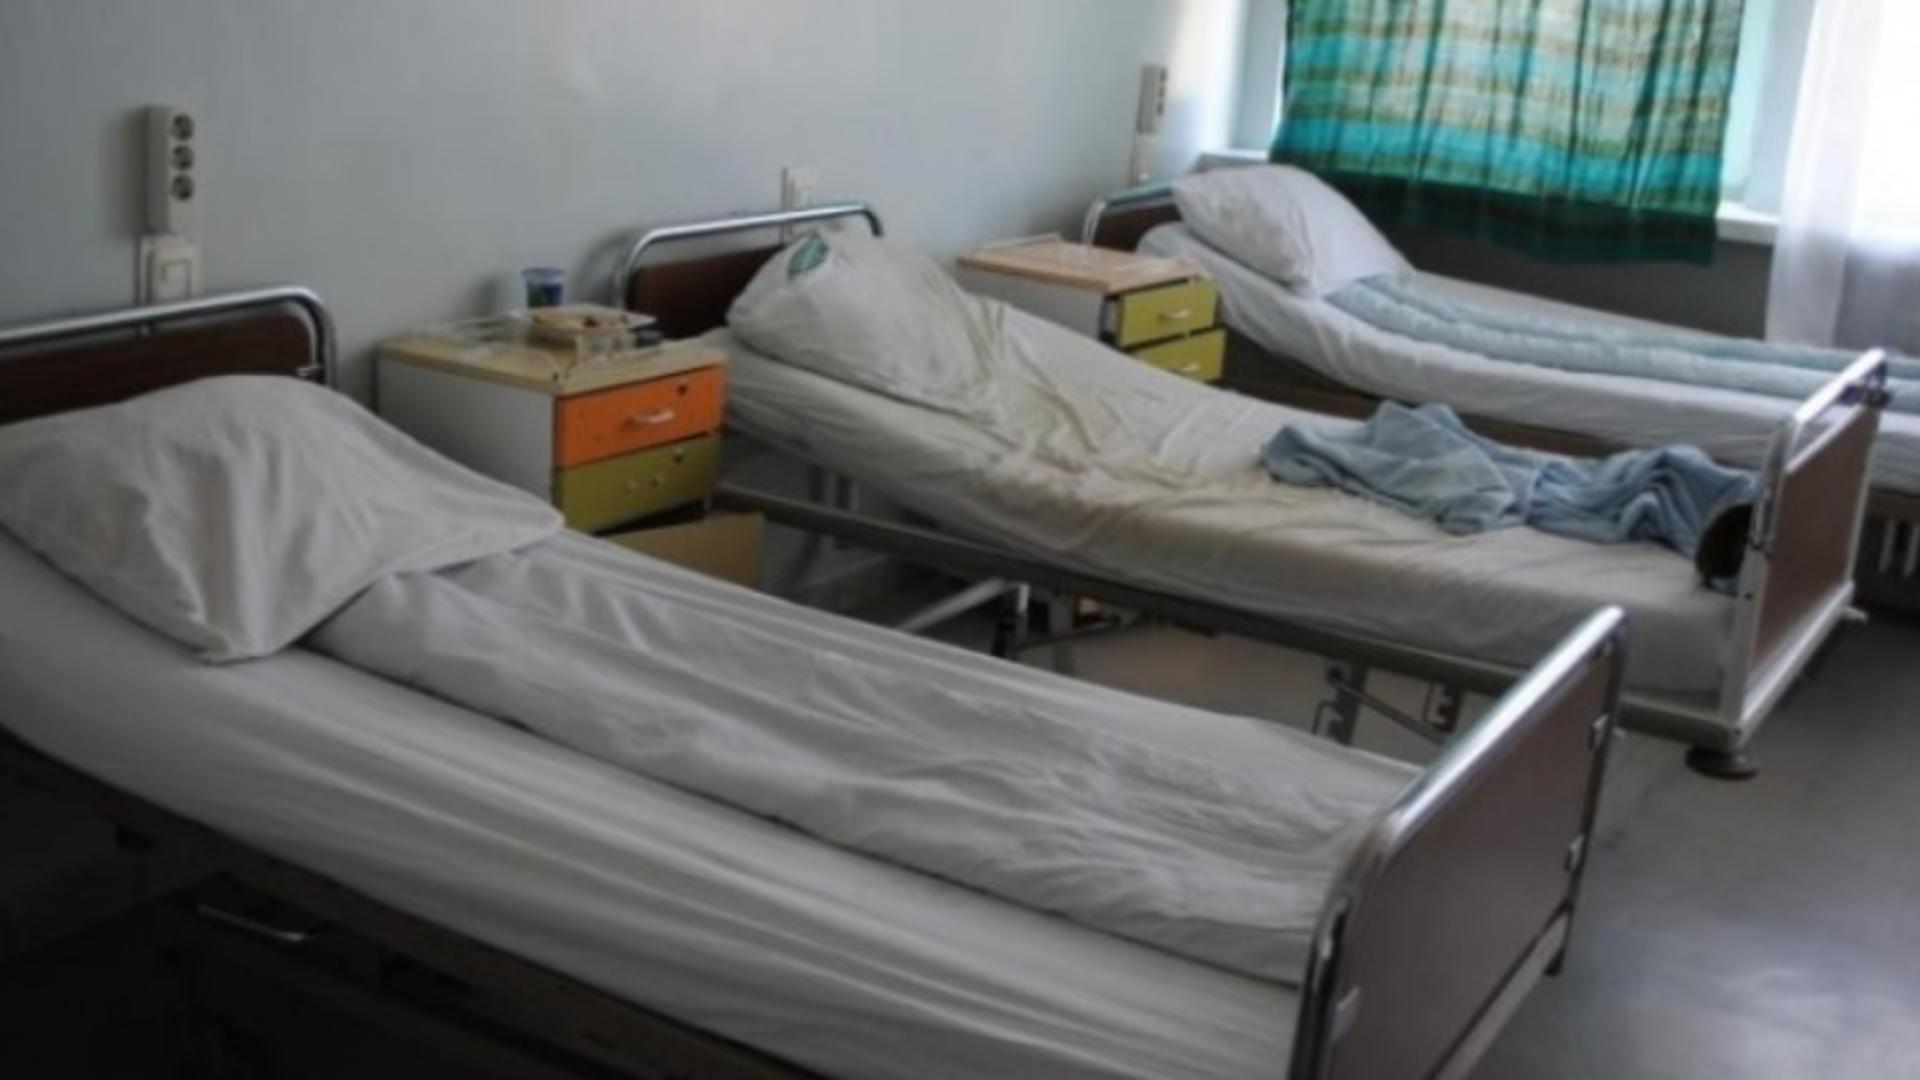 Cazul pacientei moarte la Spitalul din Slatina, în liftul blocat între etaje